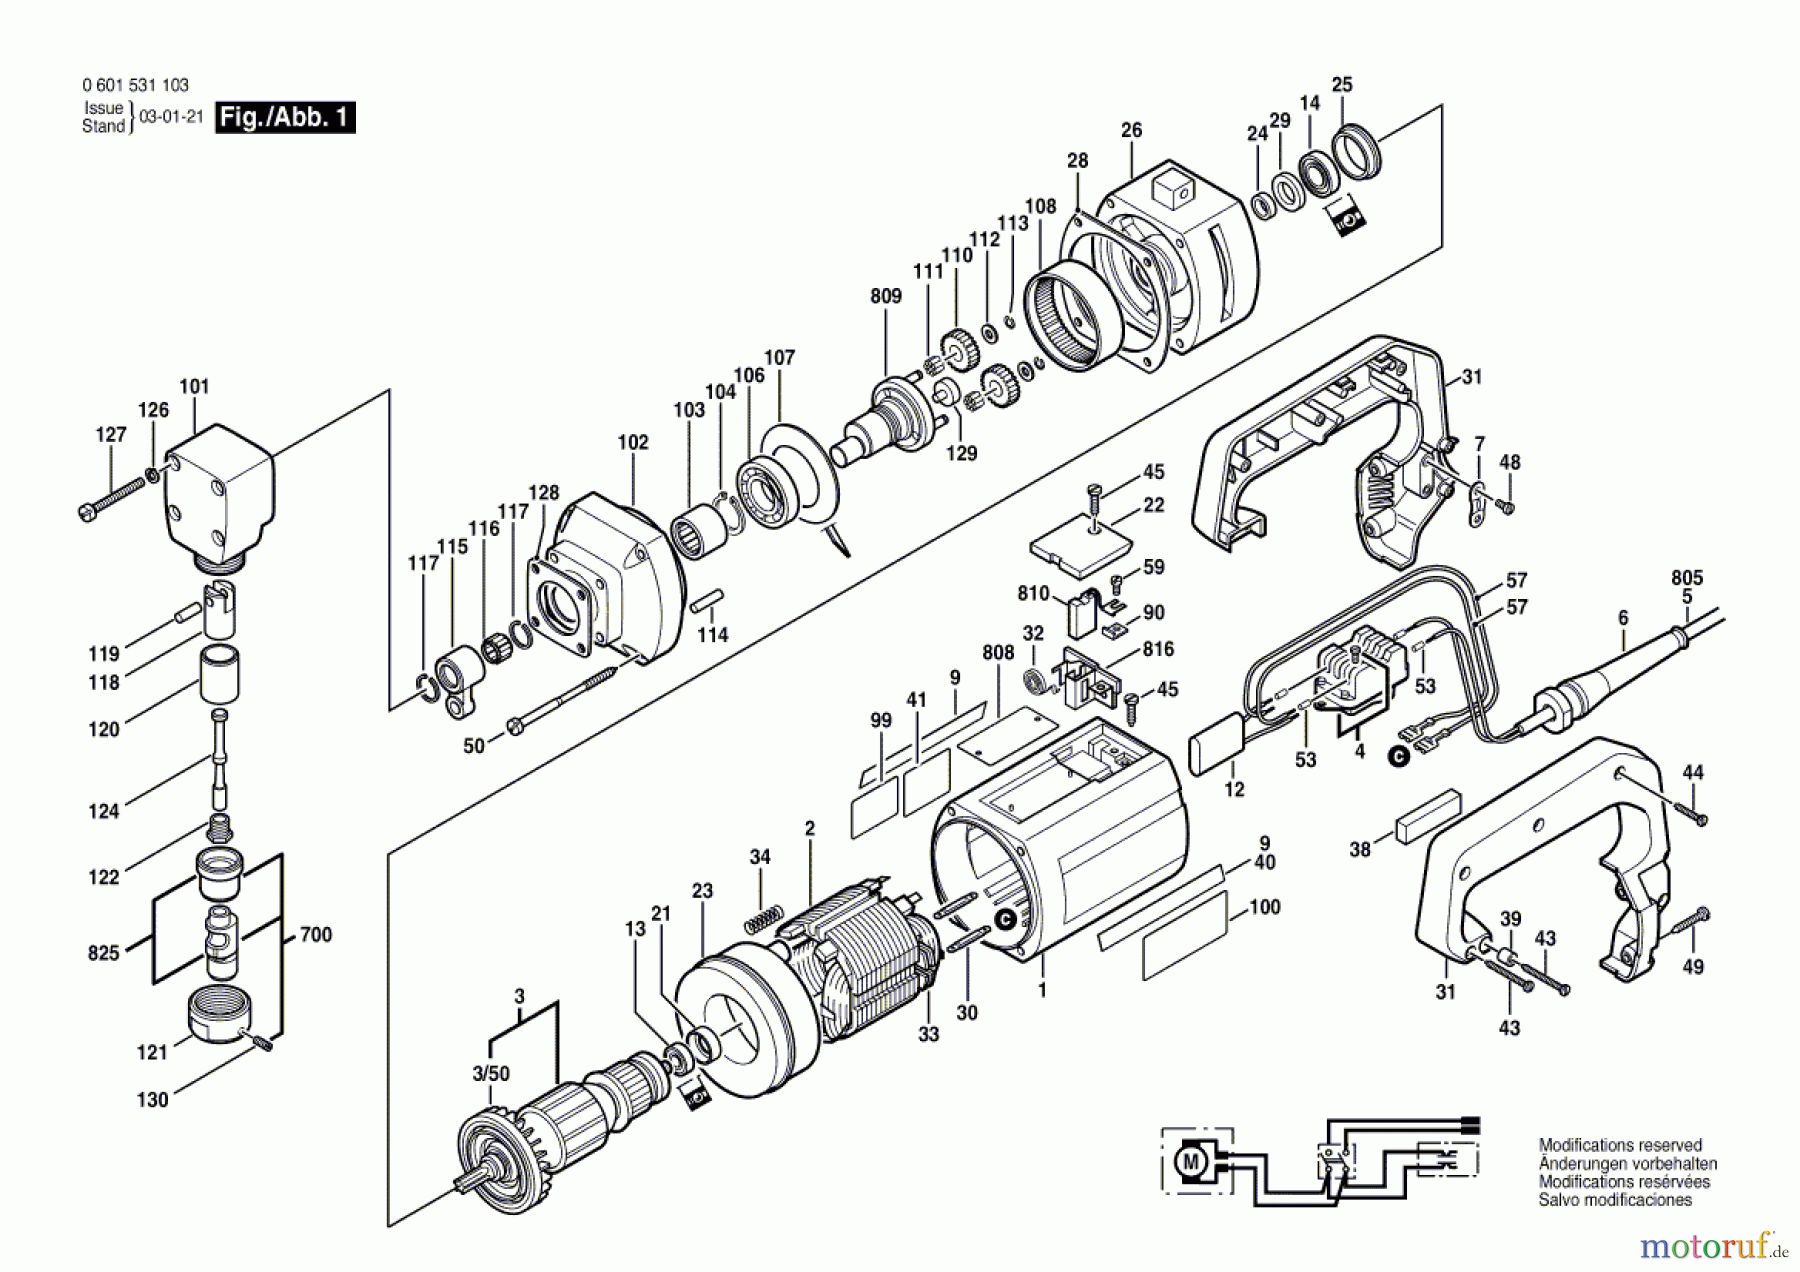  Bosch Werkzeug Nager GNA 2,5 Seite 1